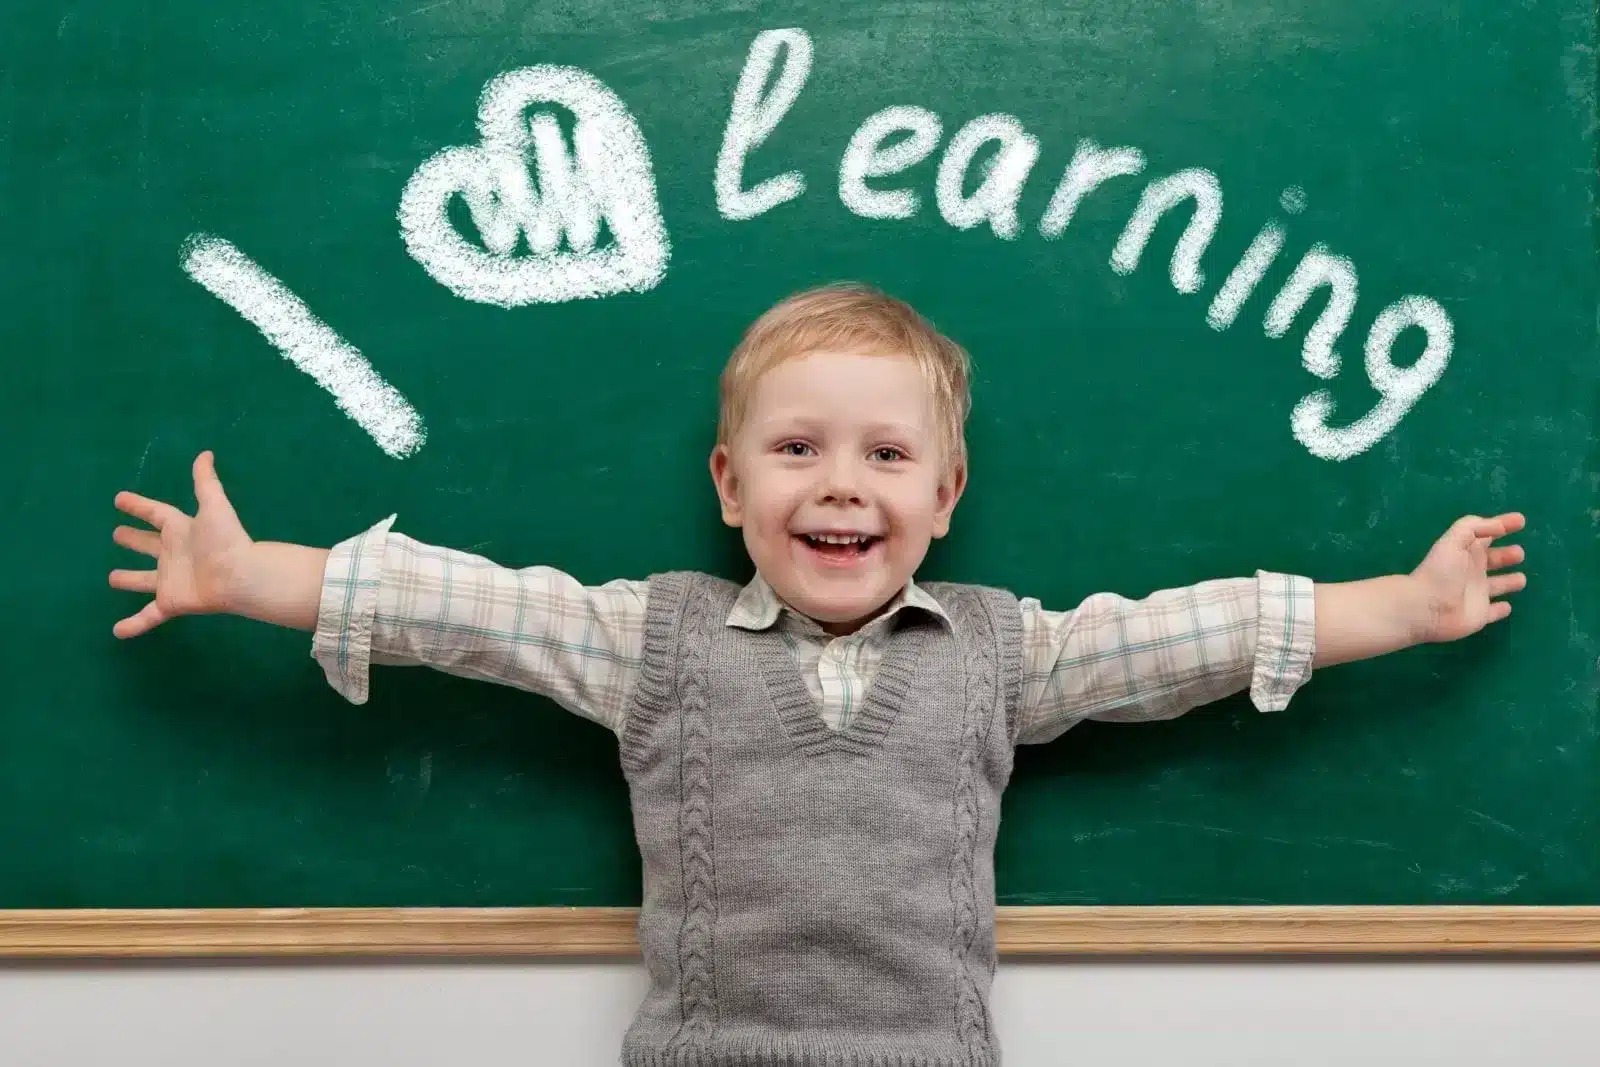 Boy with I Love Learning written in chalkboard behind